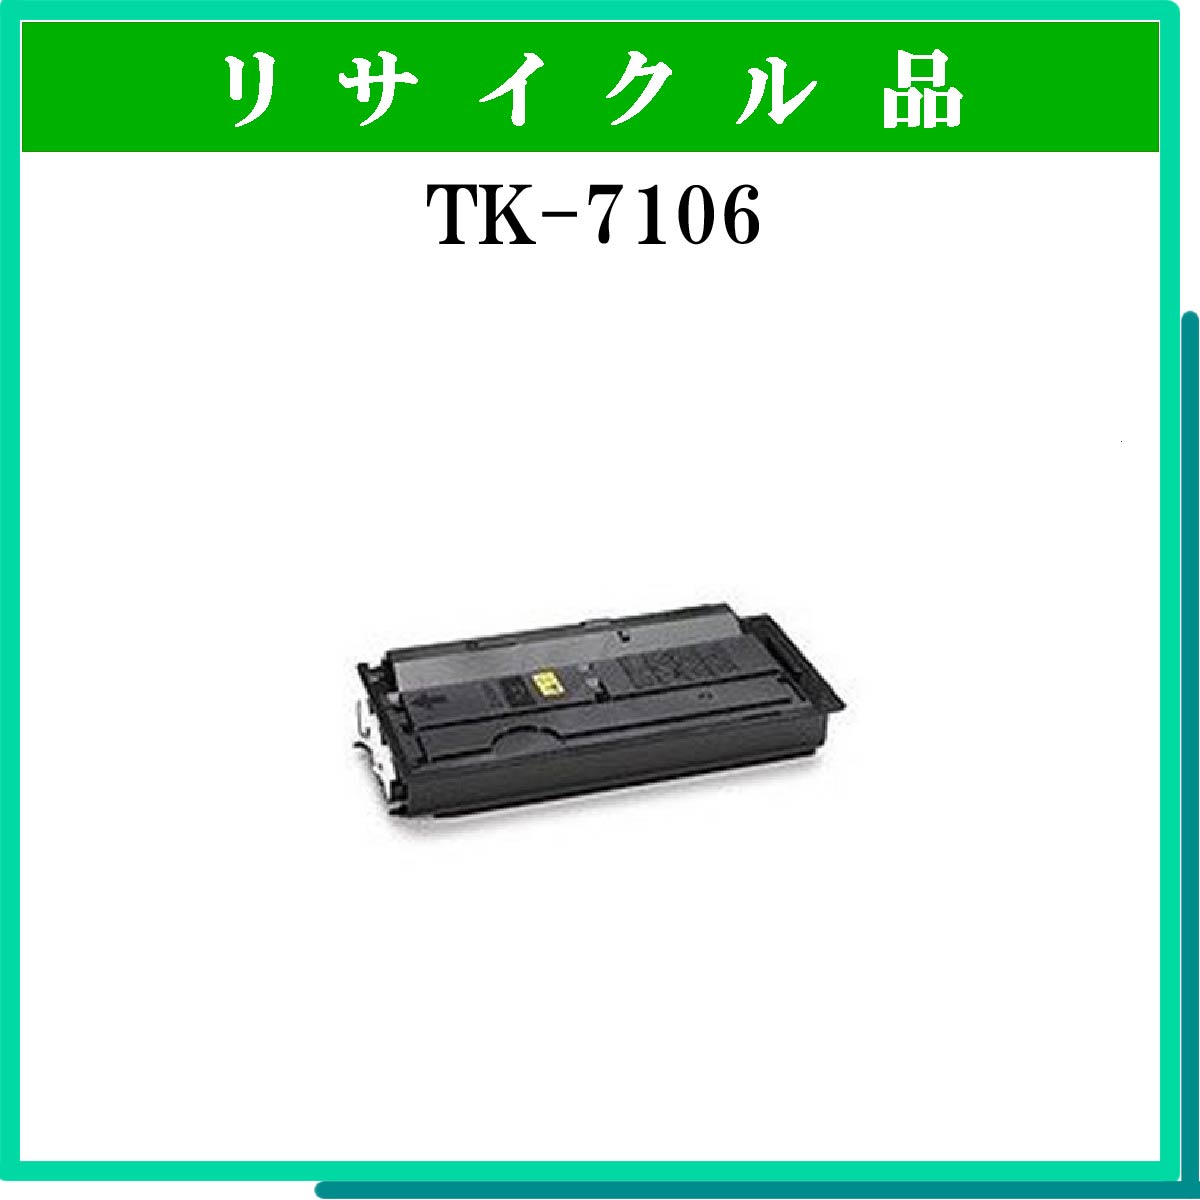 TK-7106